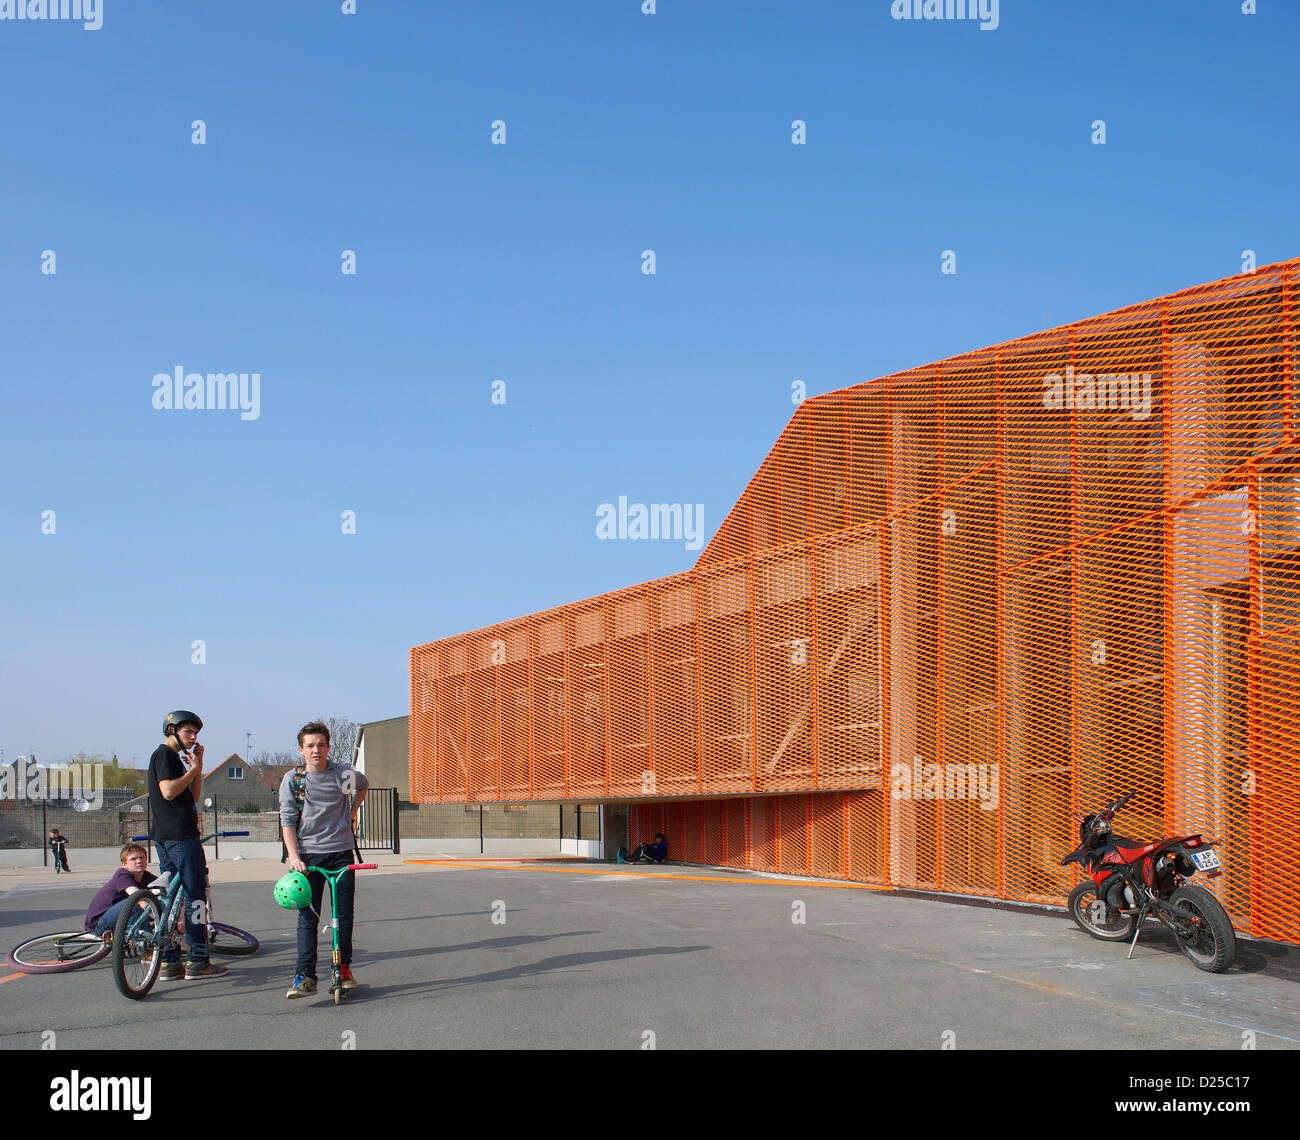 Zap' Ados Skatepark, Calais, France. Architect: Bang Architectes, 2011. Detailed perspective of orange coloured mesh facade. Stock Photo